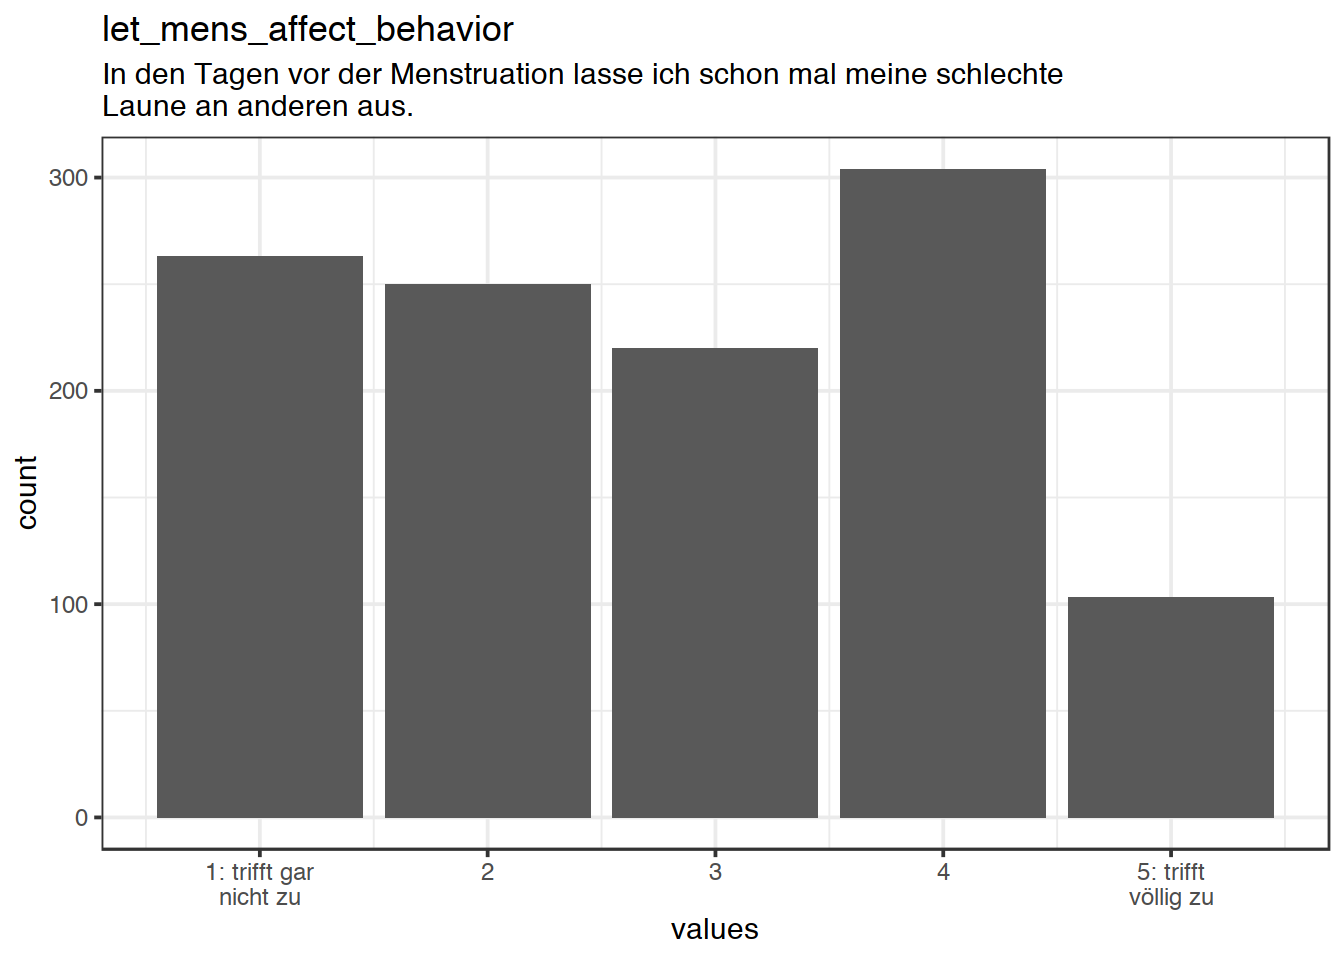 Distribution of values for let_mens_affect_behavior